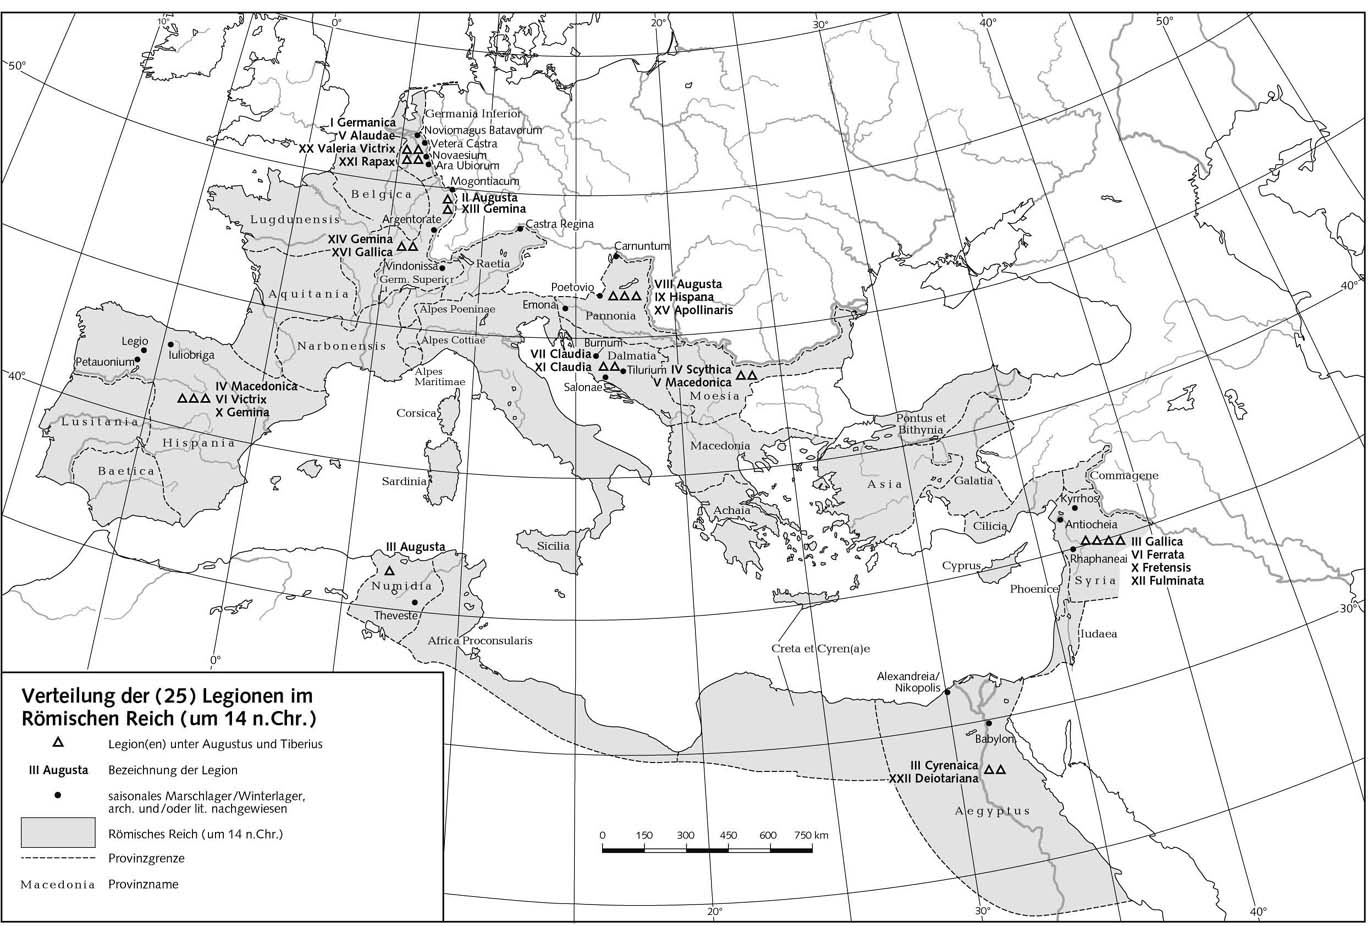 Распределение легионов (25) по Римской империи (ок 14 г. н.э.)